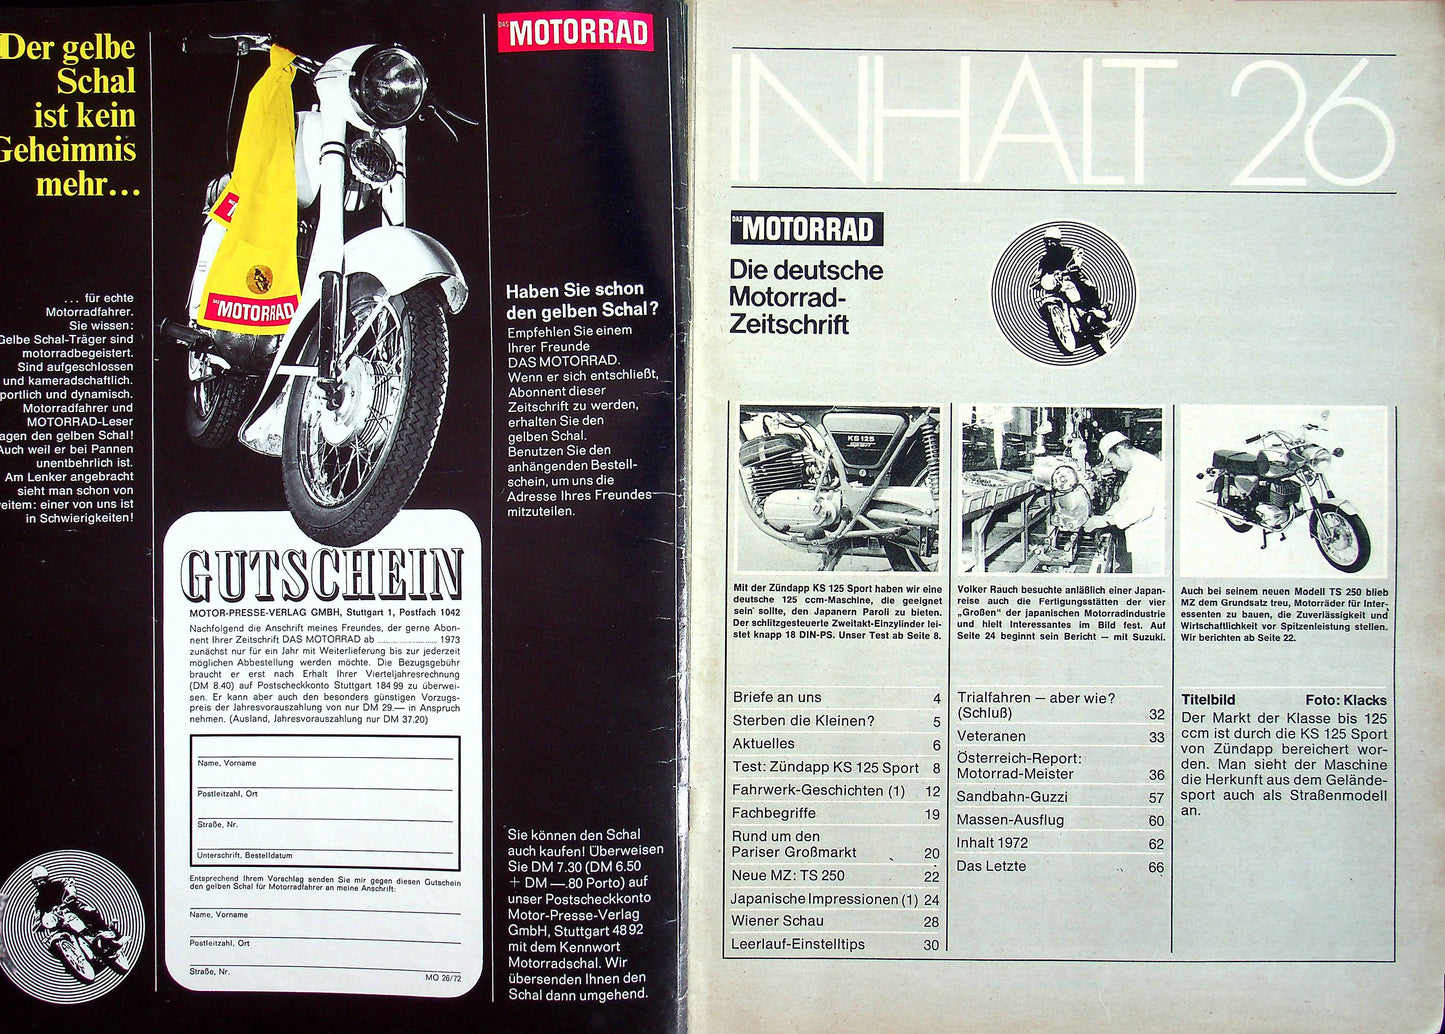 Motorrad 26/1972